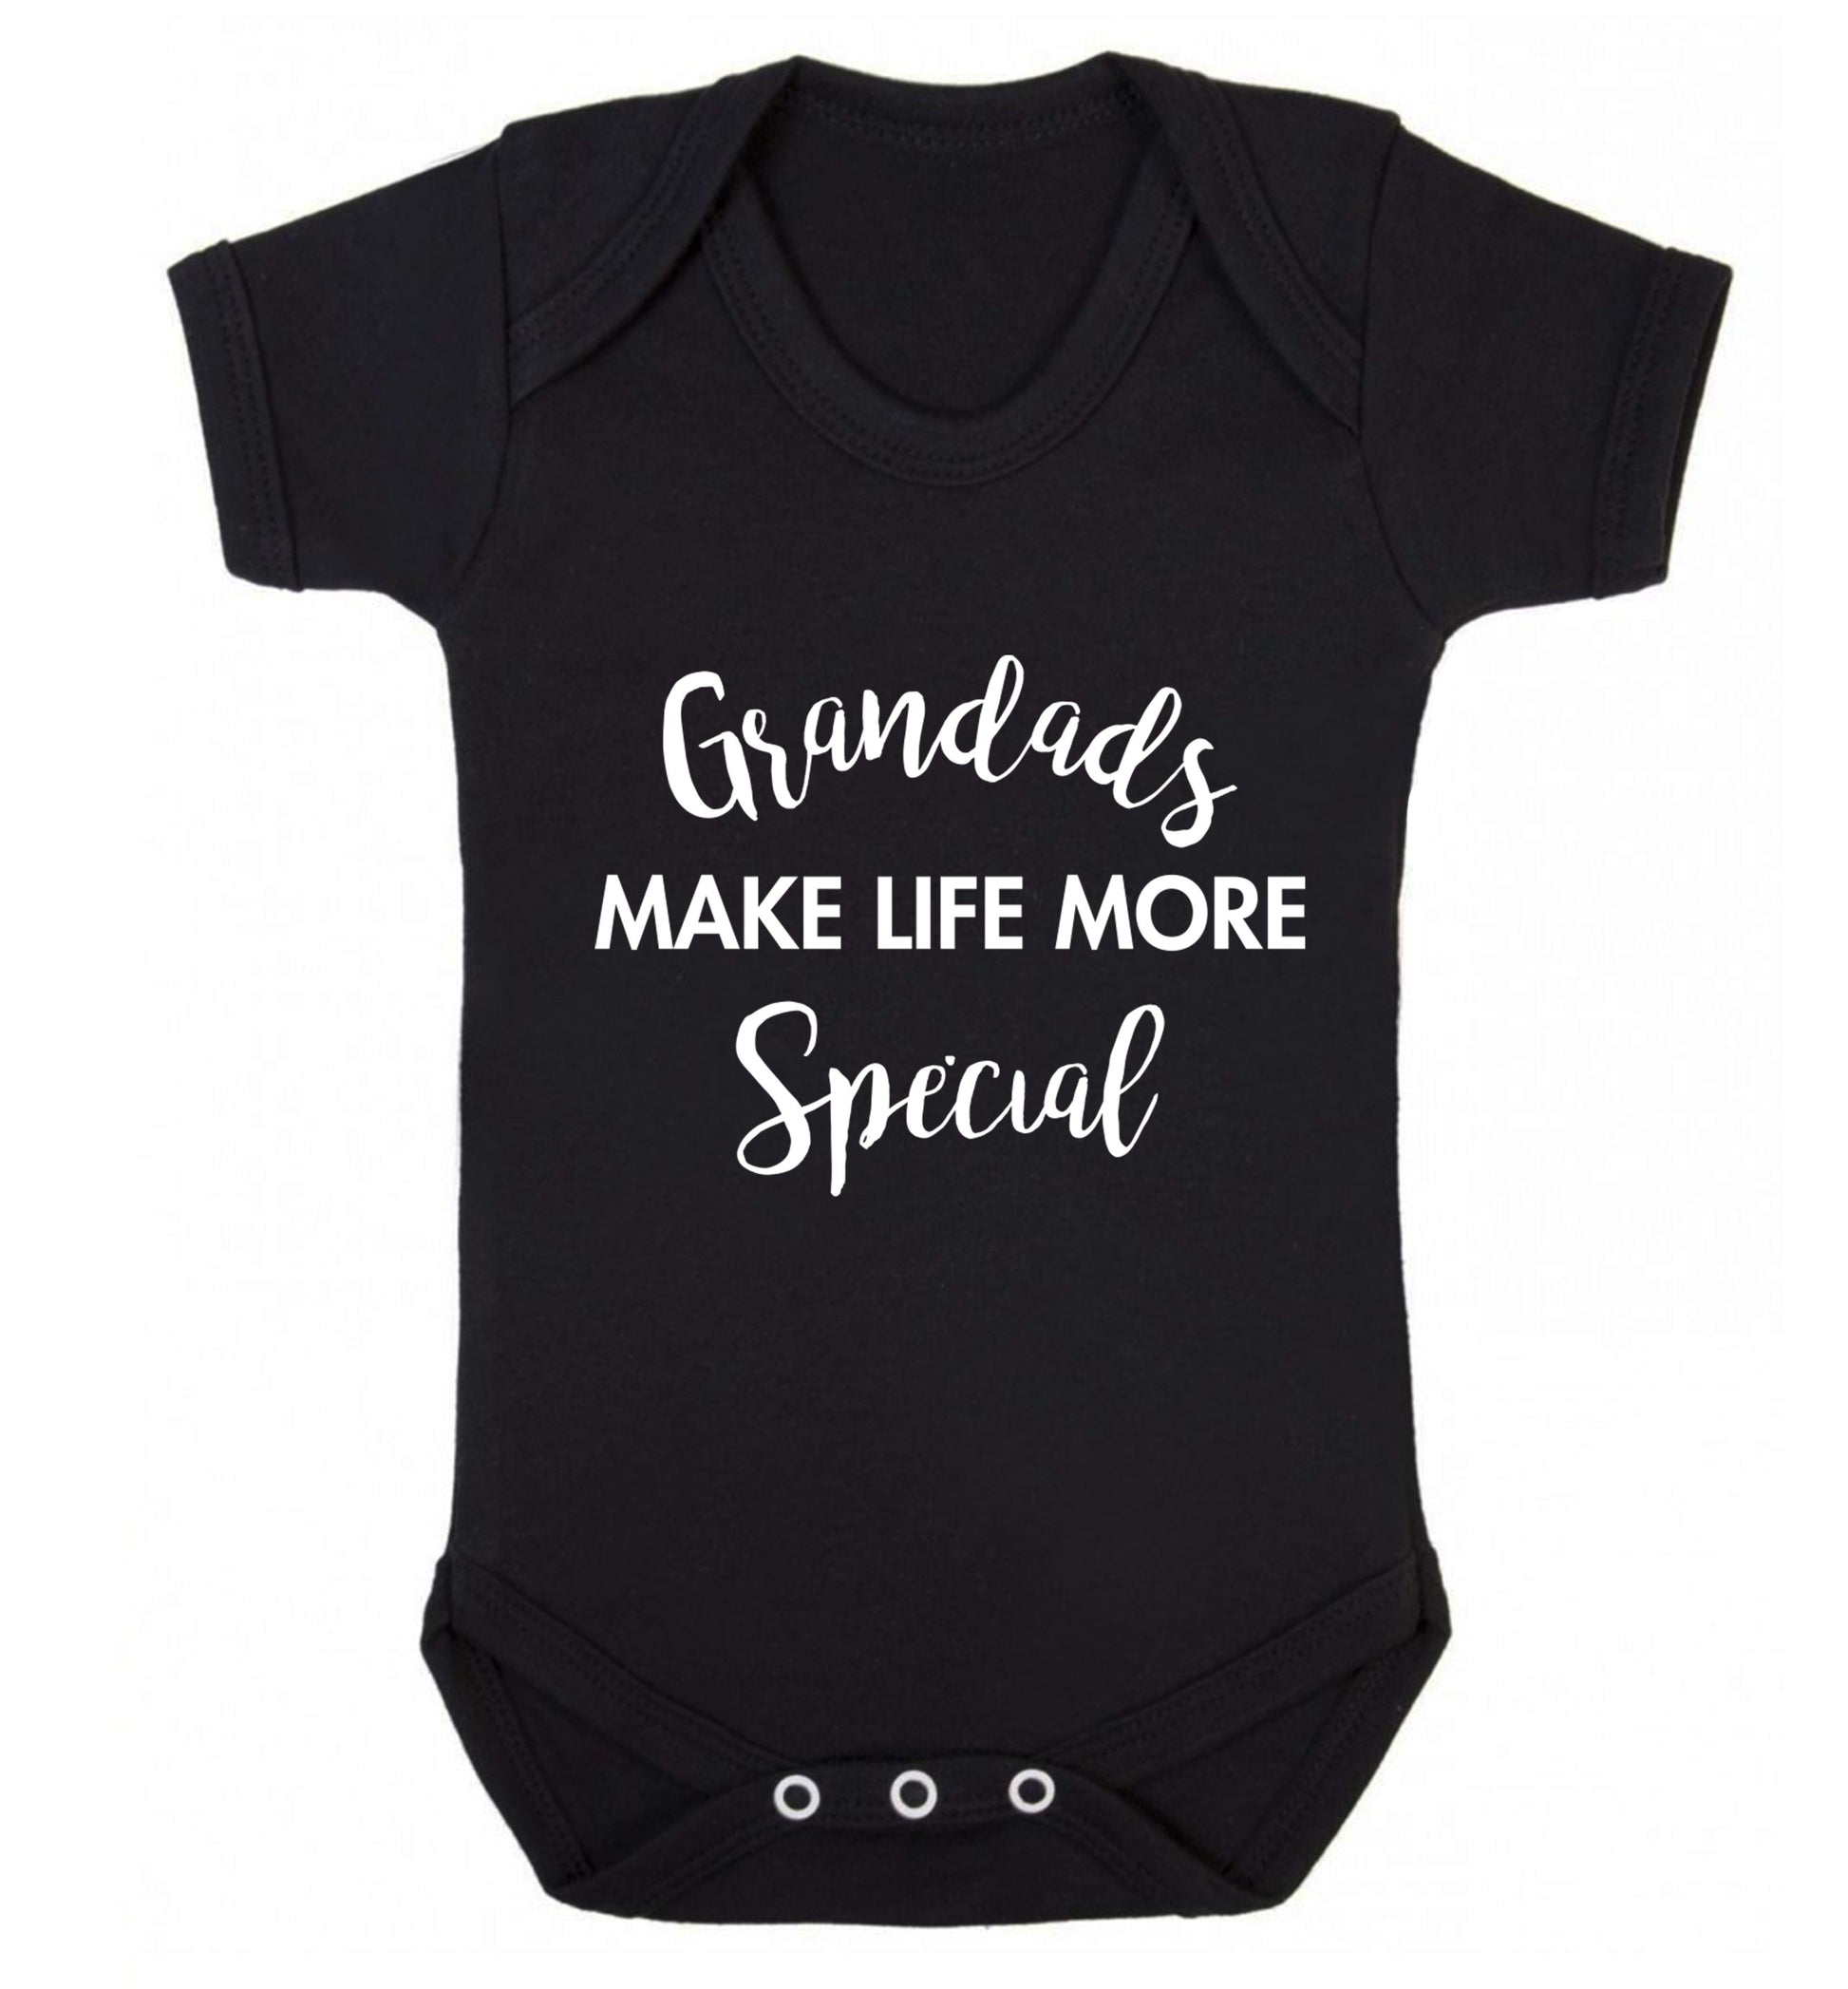 Grandads make life more special Baby Vest black 18-24 months